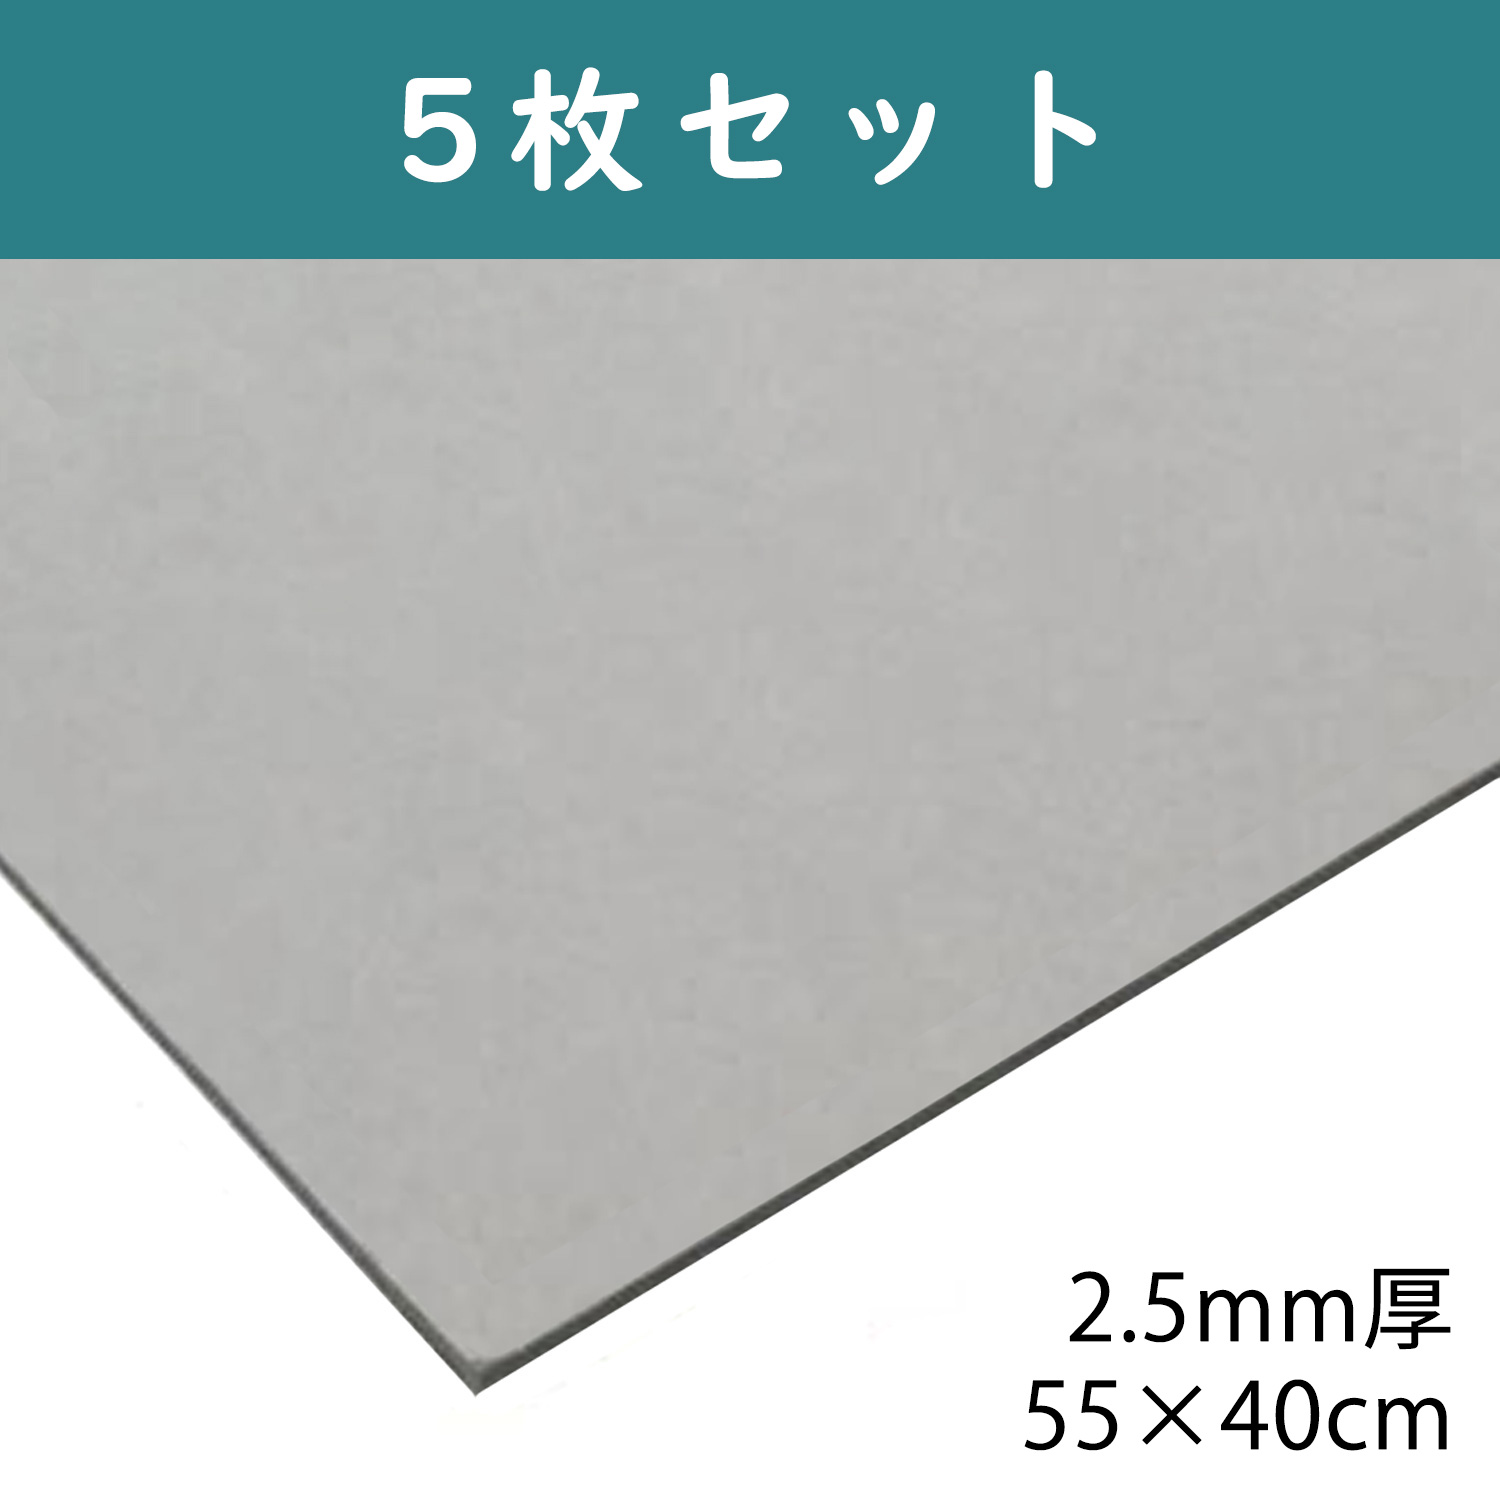 CTN5 グレー厚紙 2.5mm厚 55×40cm 5枚入 (セット)